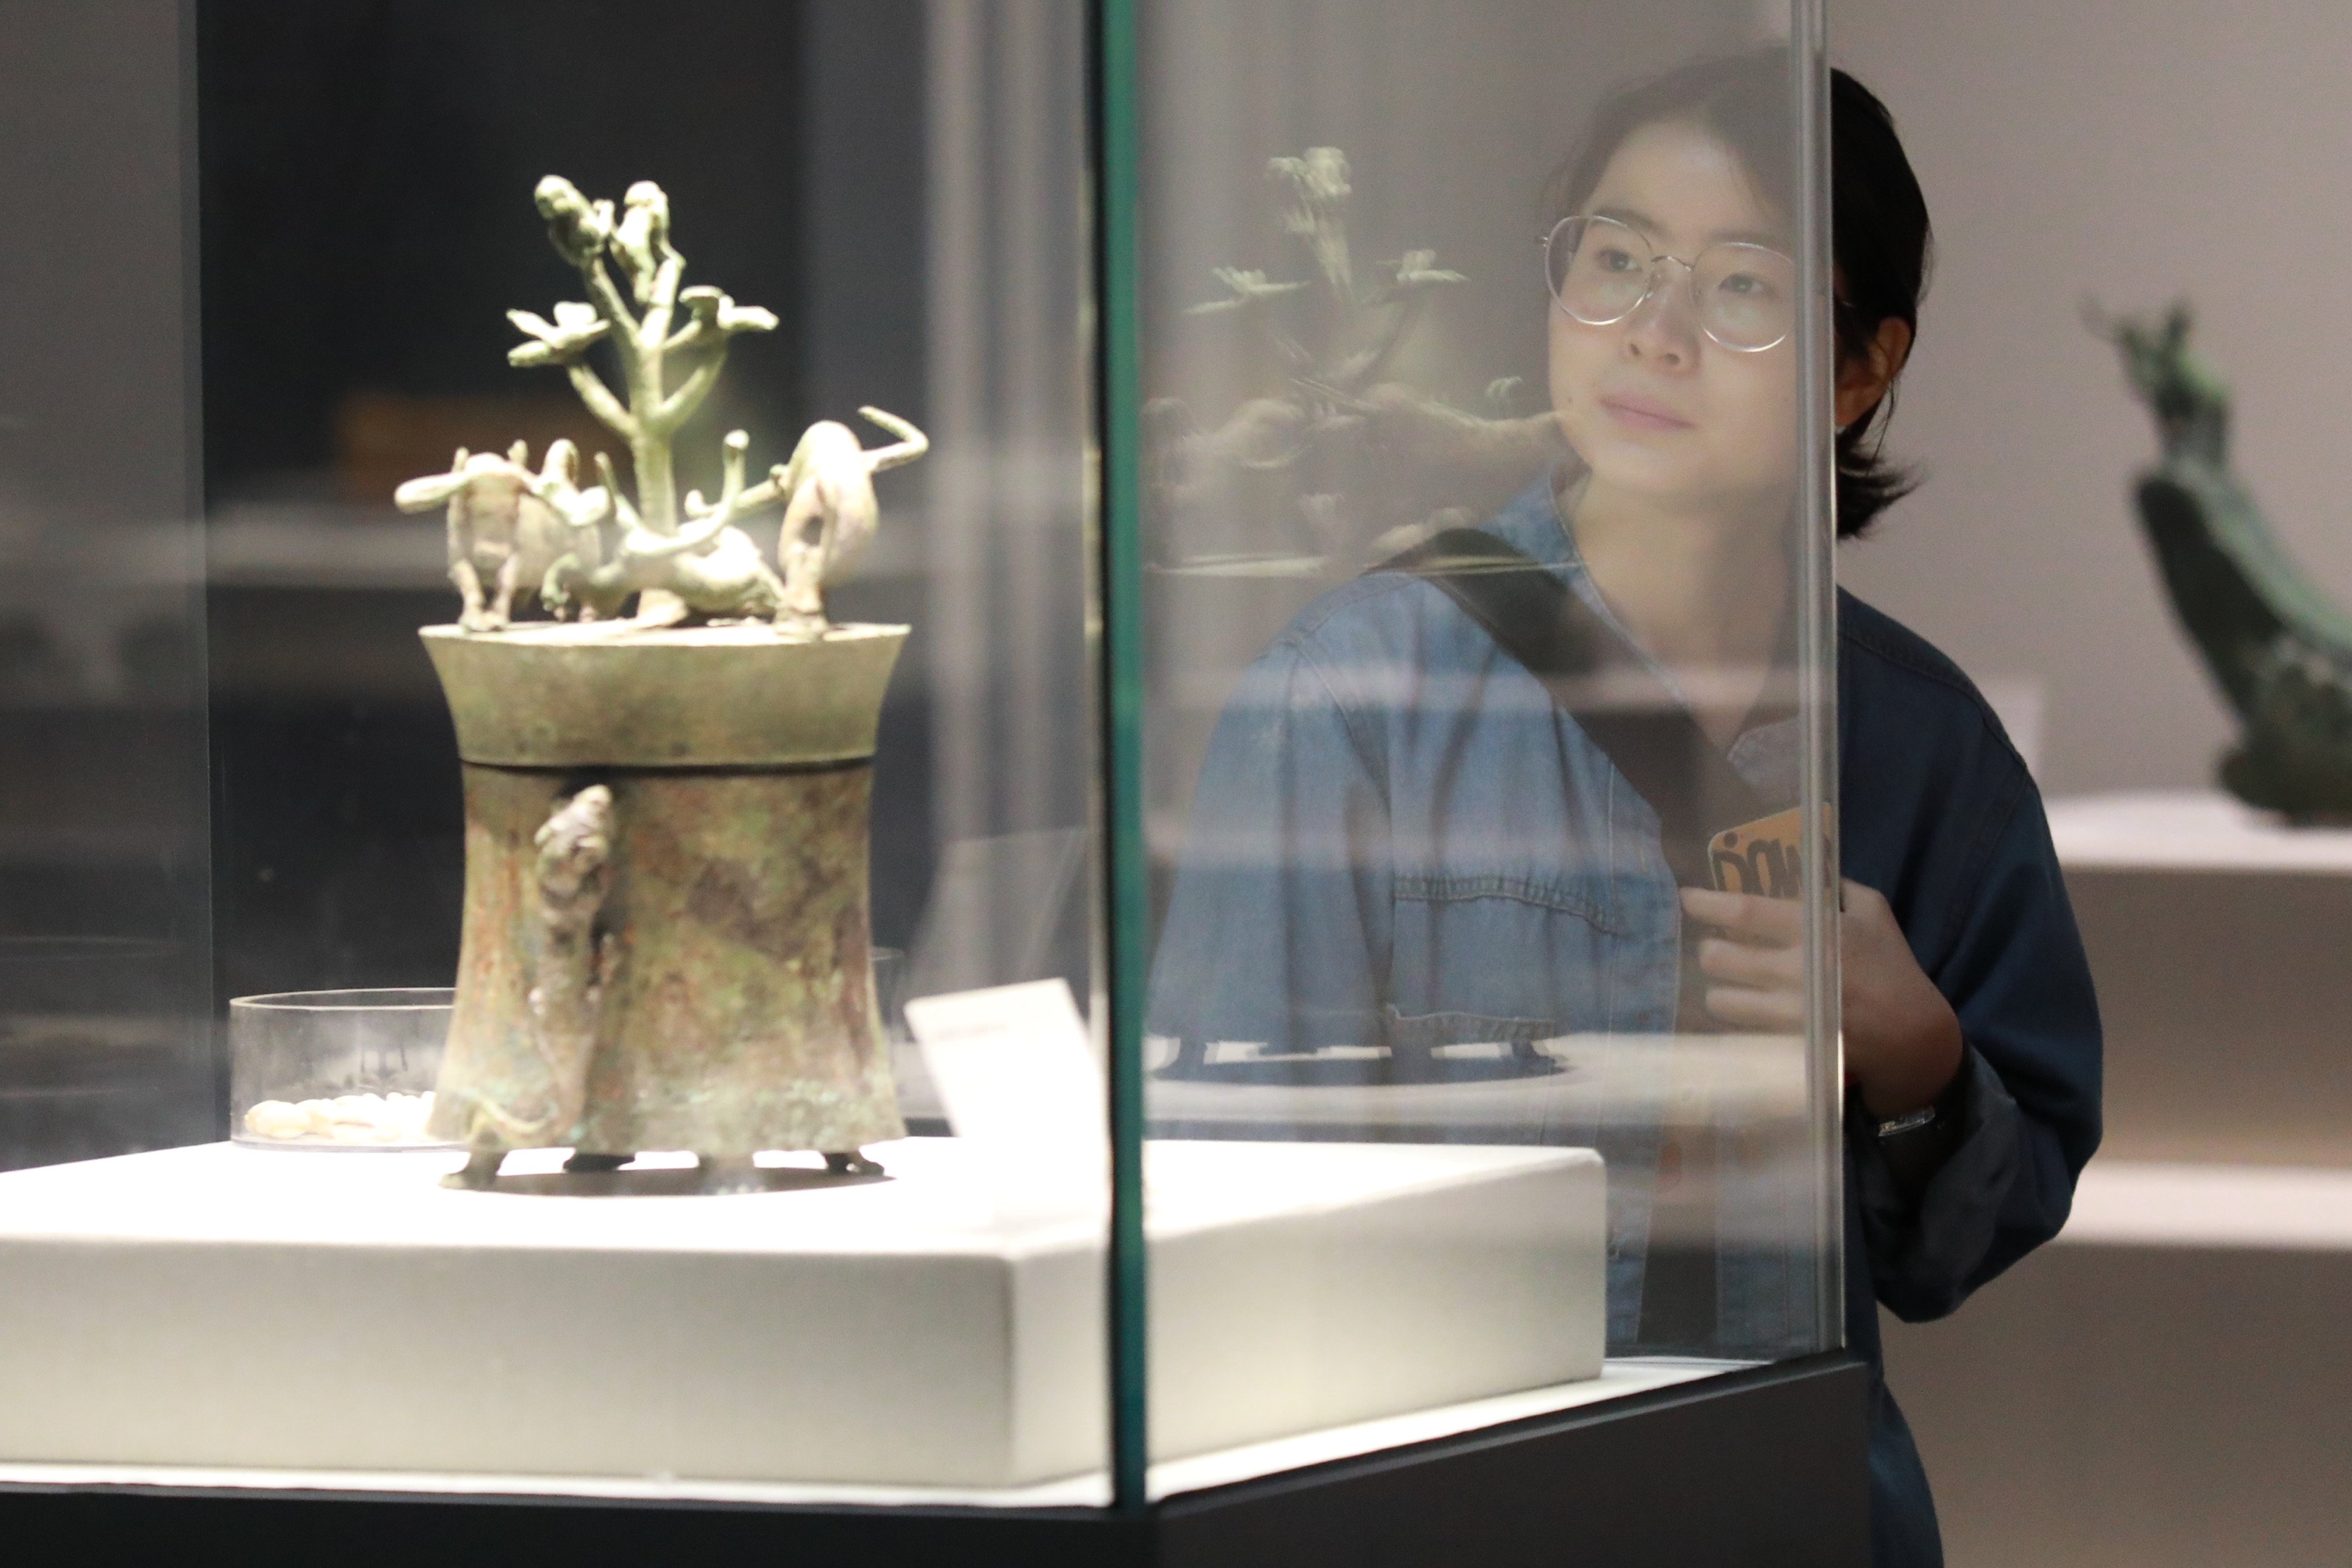 4月7日,市民在贵州省博物馆参观文物"动物搏斗场面贮贝器".